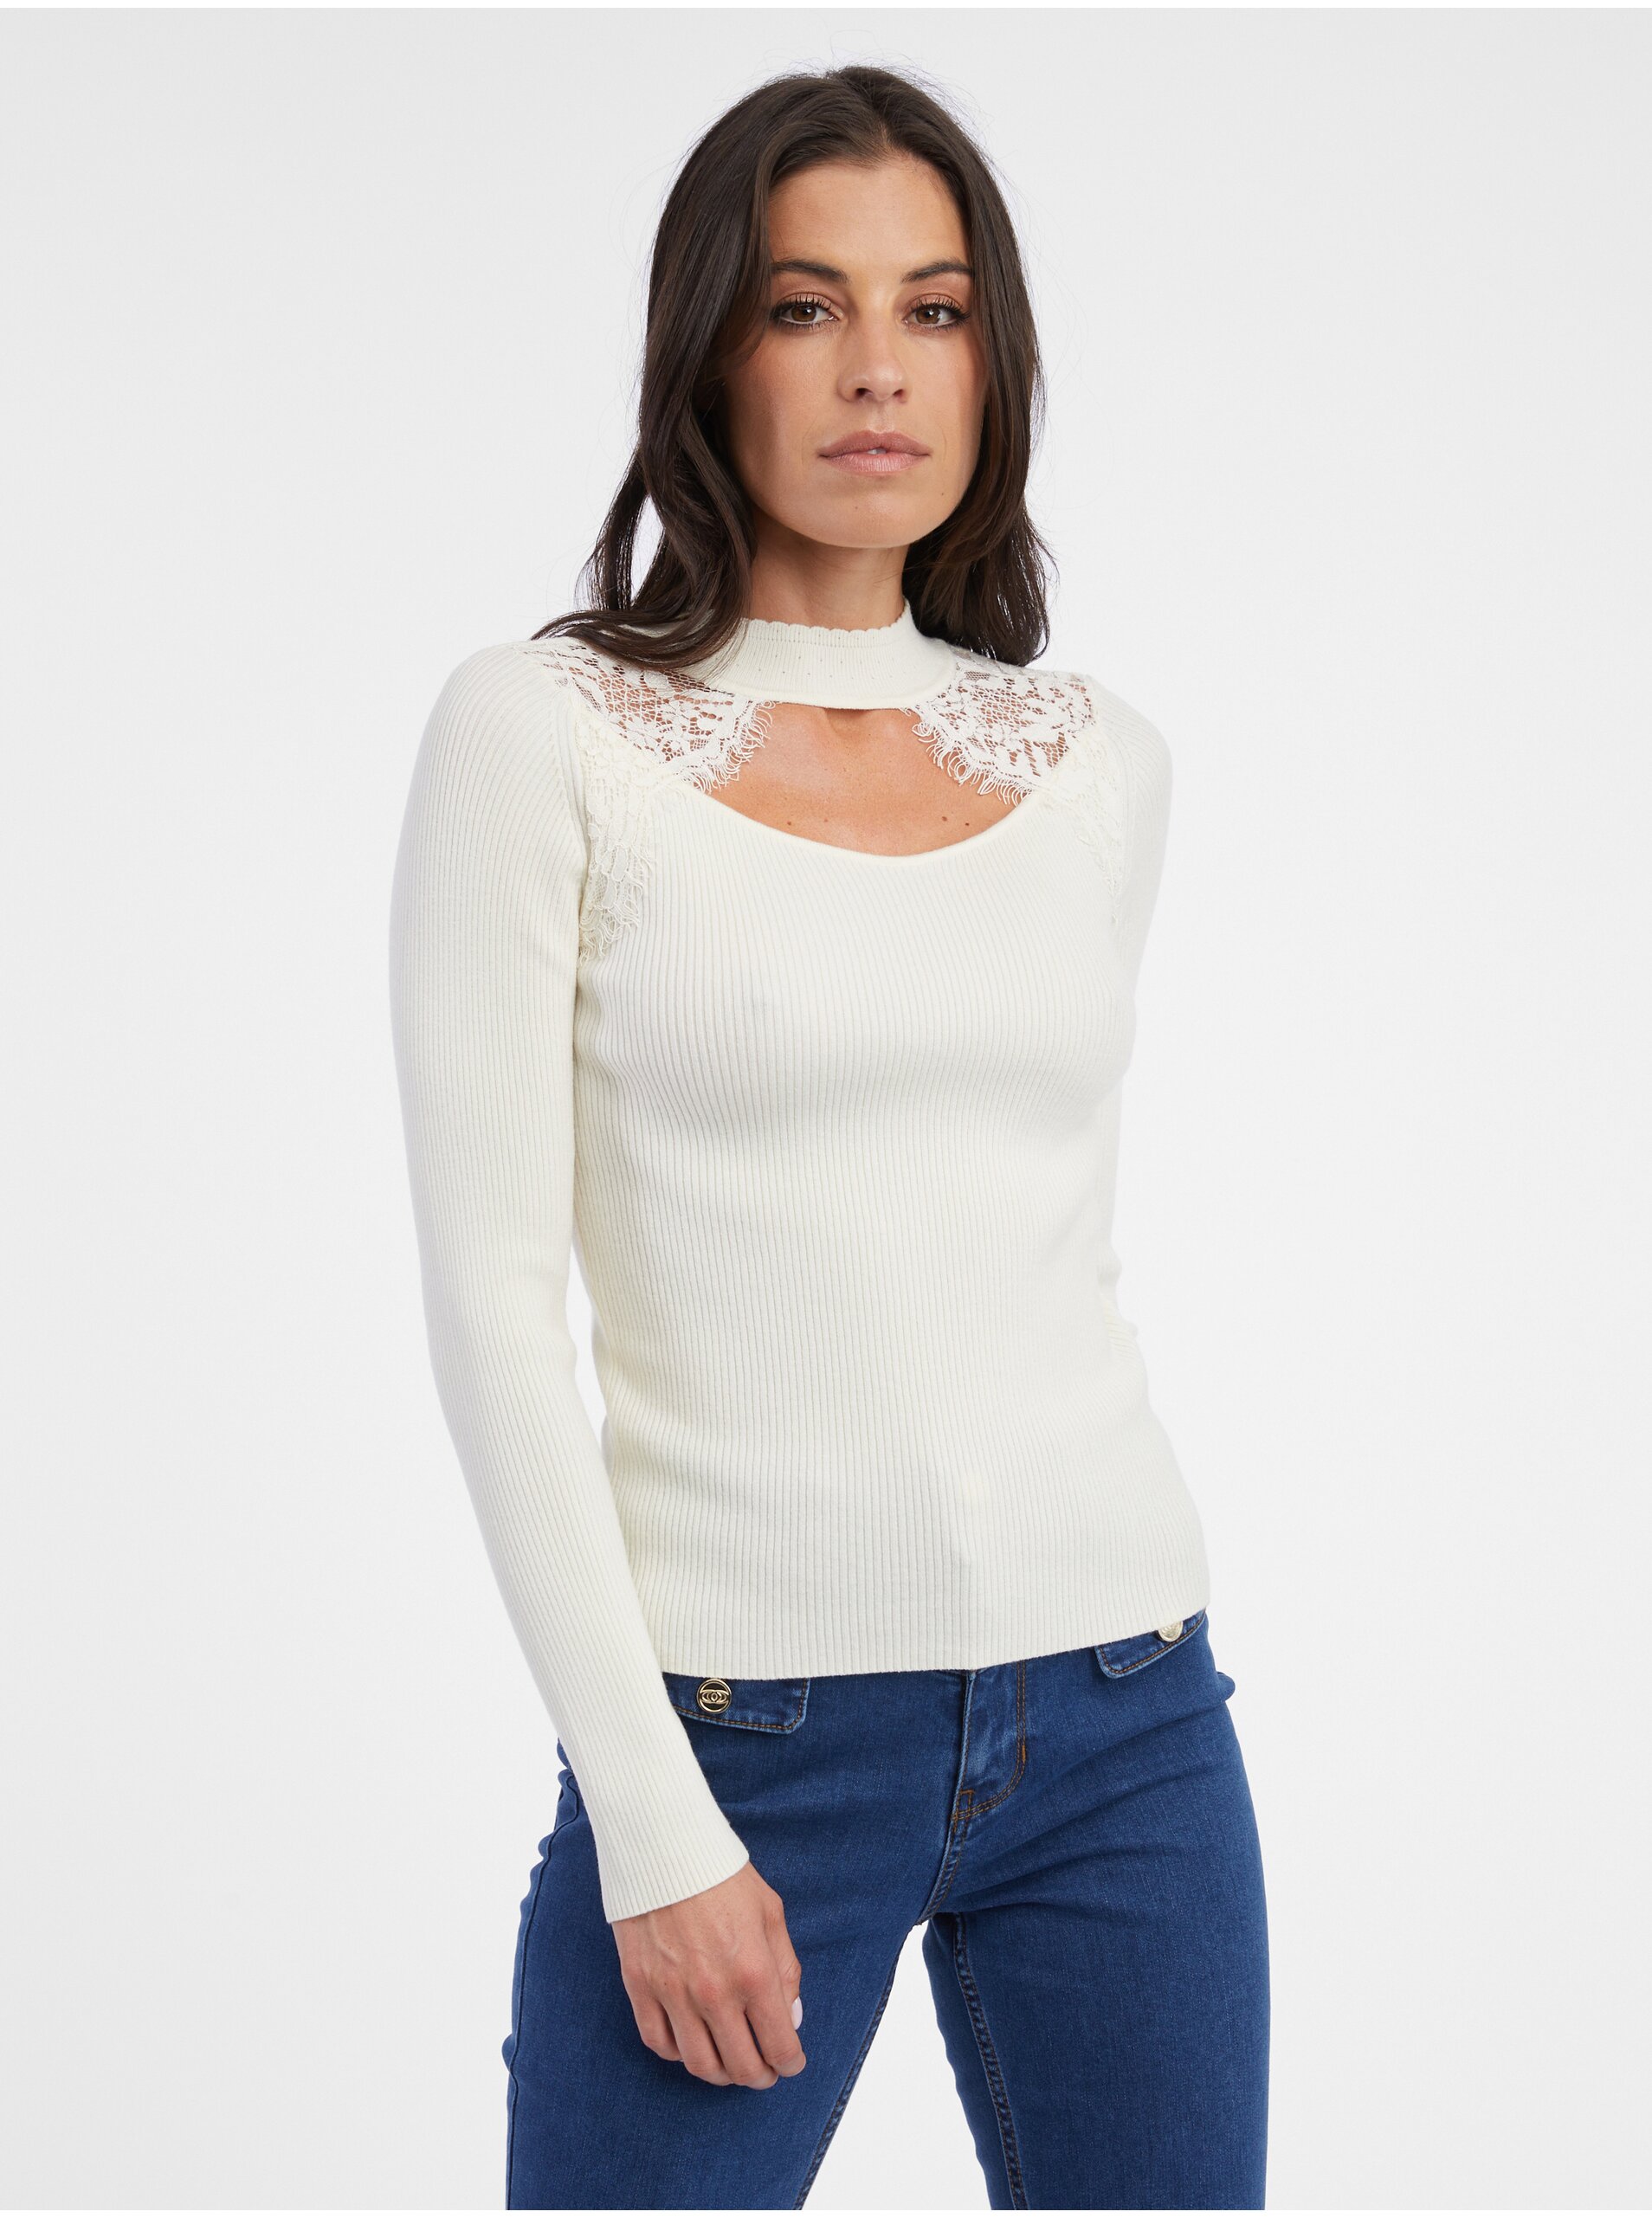 E-shop Krémový dámský lehký svetr s krajkou ORSAY